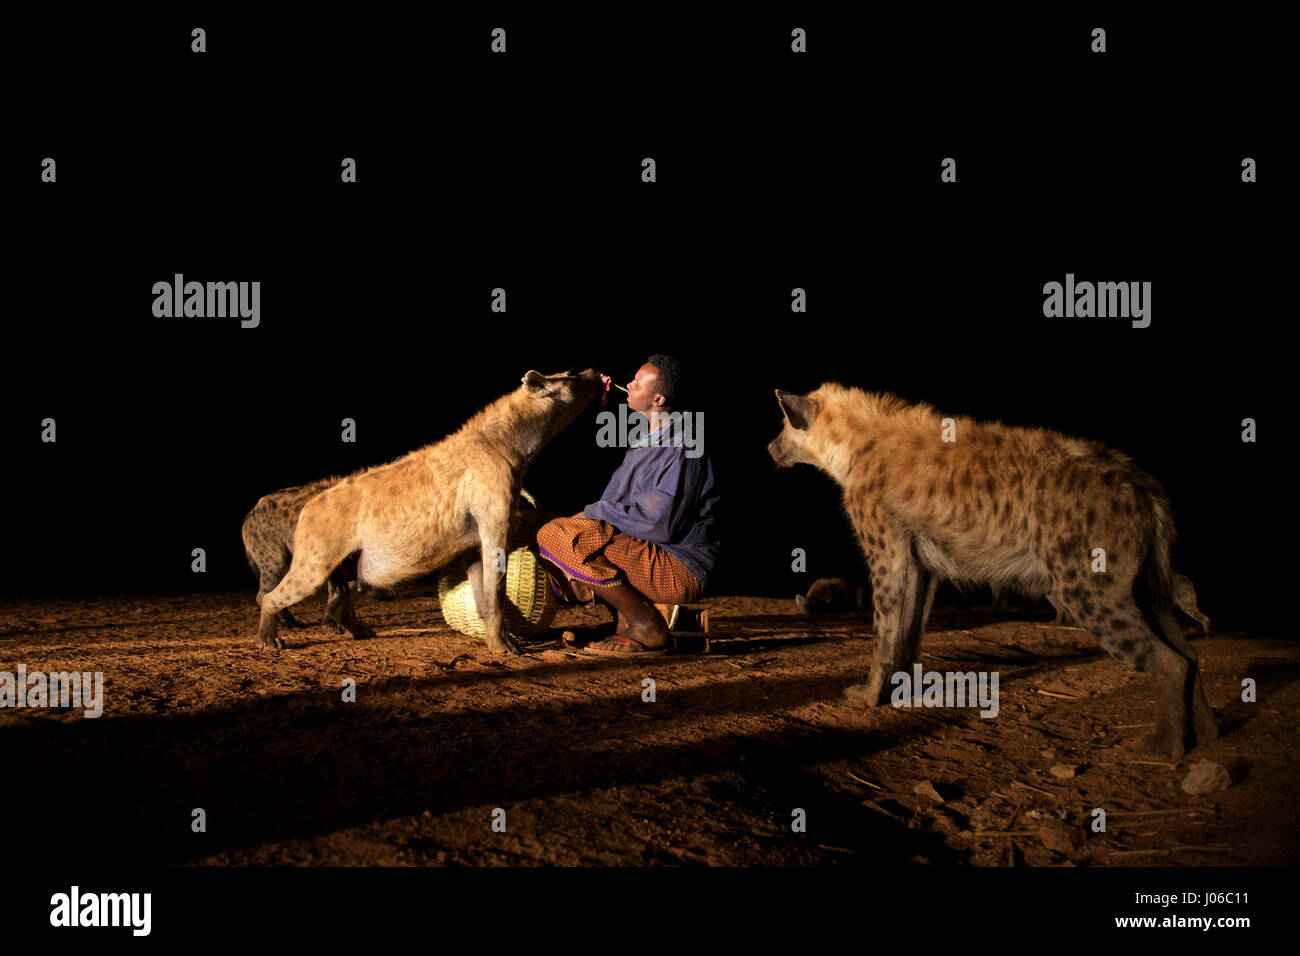 HARAR, Äthiopien: Neue 'Hyäne Man' Abbas Saleh Fütterung einer Hyäne. Treffen Sie die unglaubliche Hyäne Mann von Harar, die nun seinen Titel auf seinen Sohn nach dreißig Jahren, am besten mit Freunden einen Clan dieser fleischfressende Tiere vorbei ist. Bilder zeigen einen jungen Erben die Hyäne Mann Titel nach der jahrhundertealten Tradition seines Volkes vor möglichen Angriffen durch Hyänen ruhig füttern diese wilden Radikalfänger schützen. Er ist völlig frei von jeglicher Art von Angst Sie assoziieren würde, wobei dies in der Nähe Afrikas produktivsten Fleischfresser.  Hyänen sind dafür bekannt, angreifen und töten Menschen, sondern als Thes Stockfoto